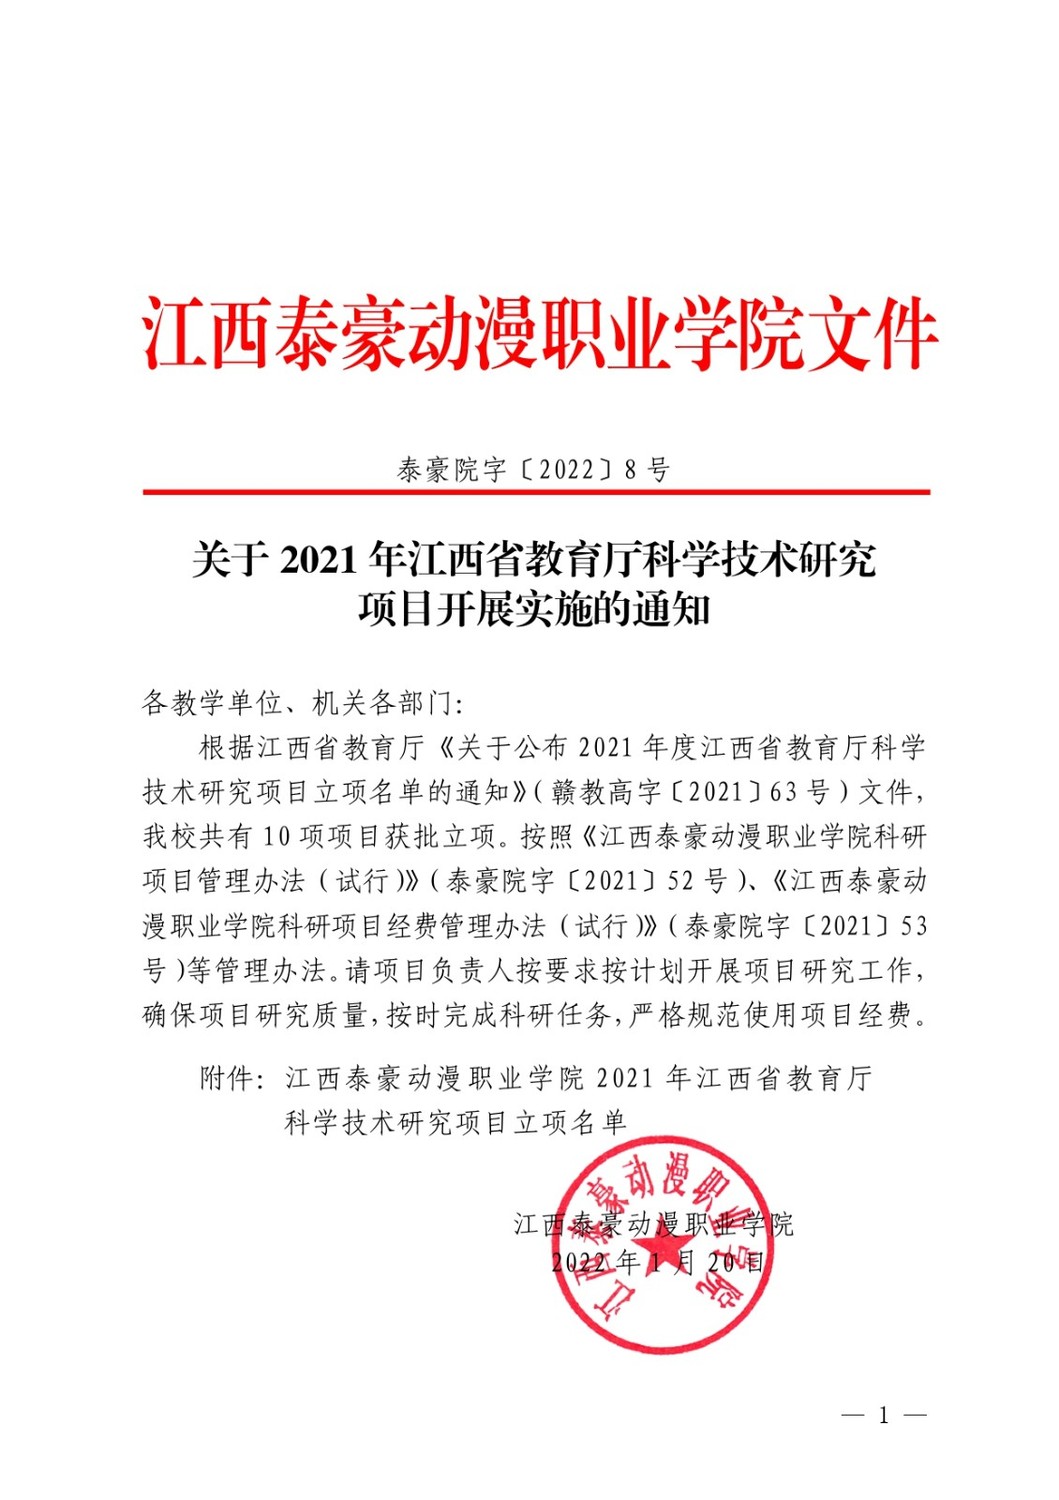 关于2021年江西省教育厅科学技术研究项目开展实施的通知_page-0001.jpg